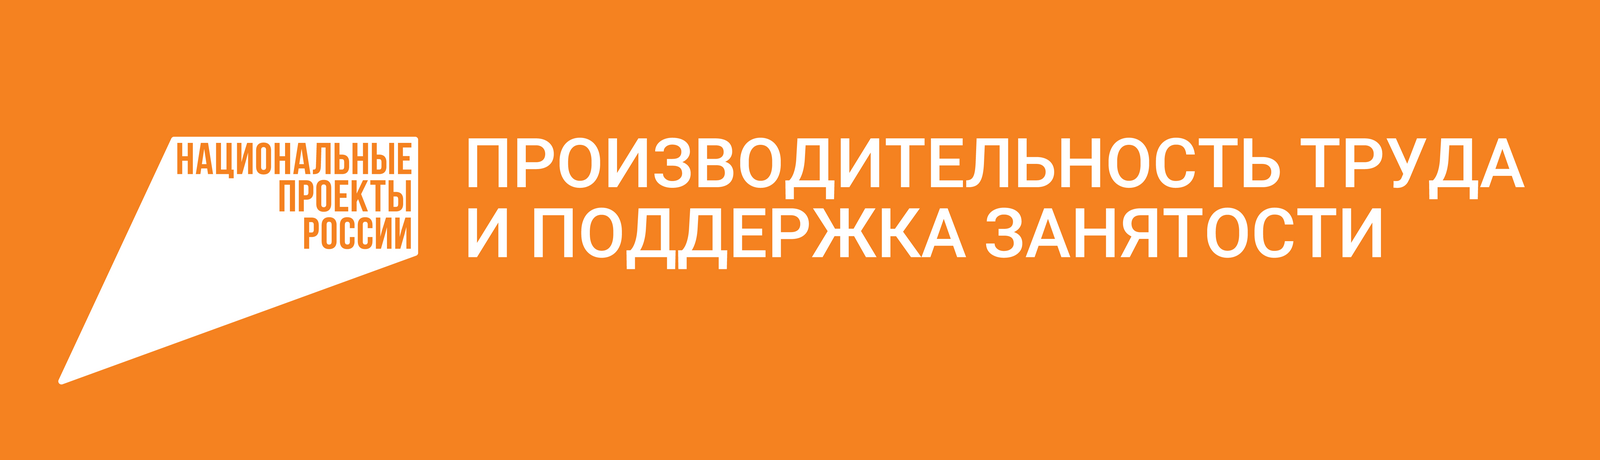 Список участников нацпроекта «Производительность труда» в Башкортостане пополнили еще два предприятия